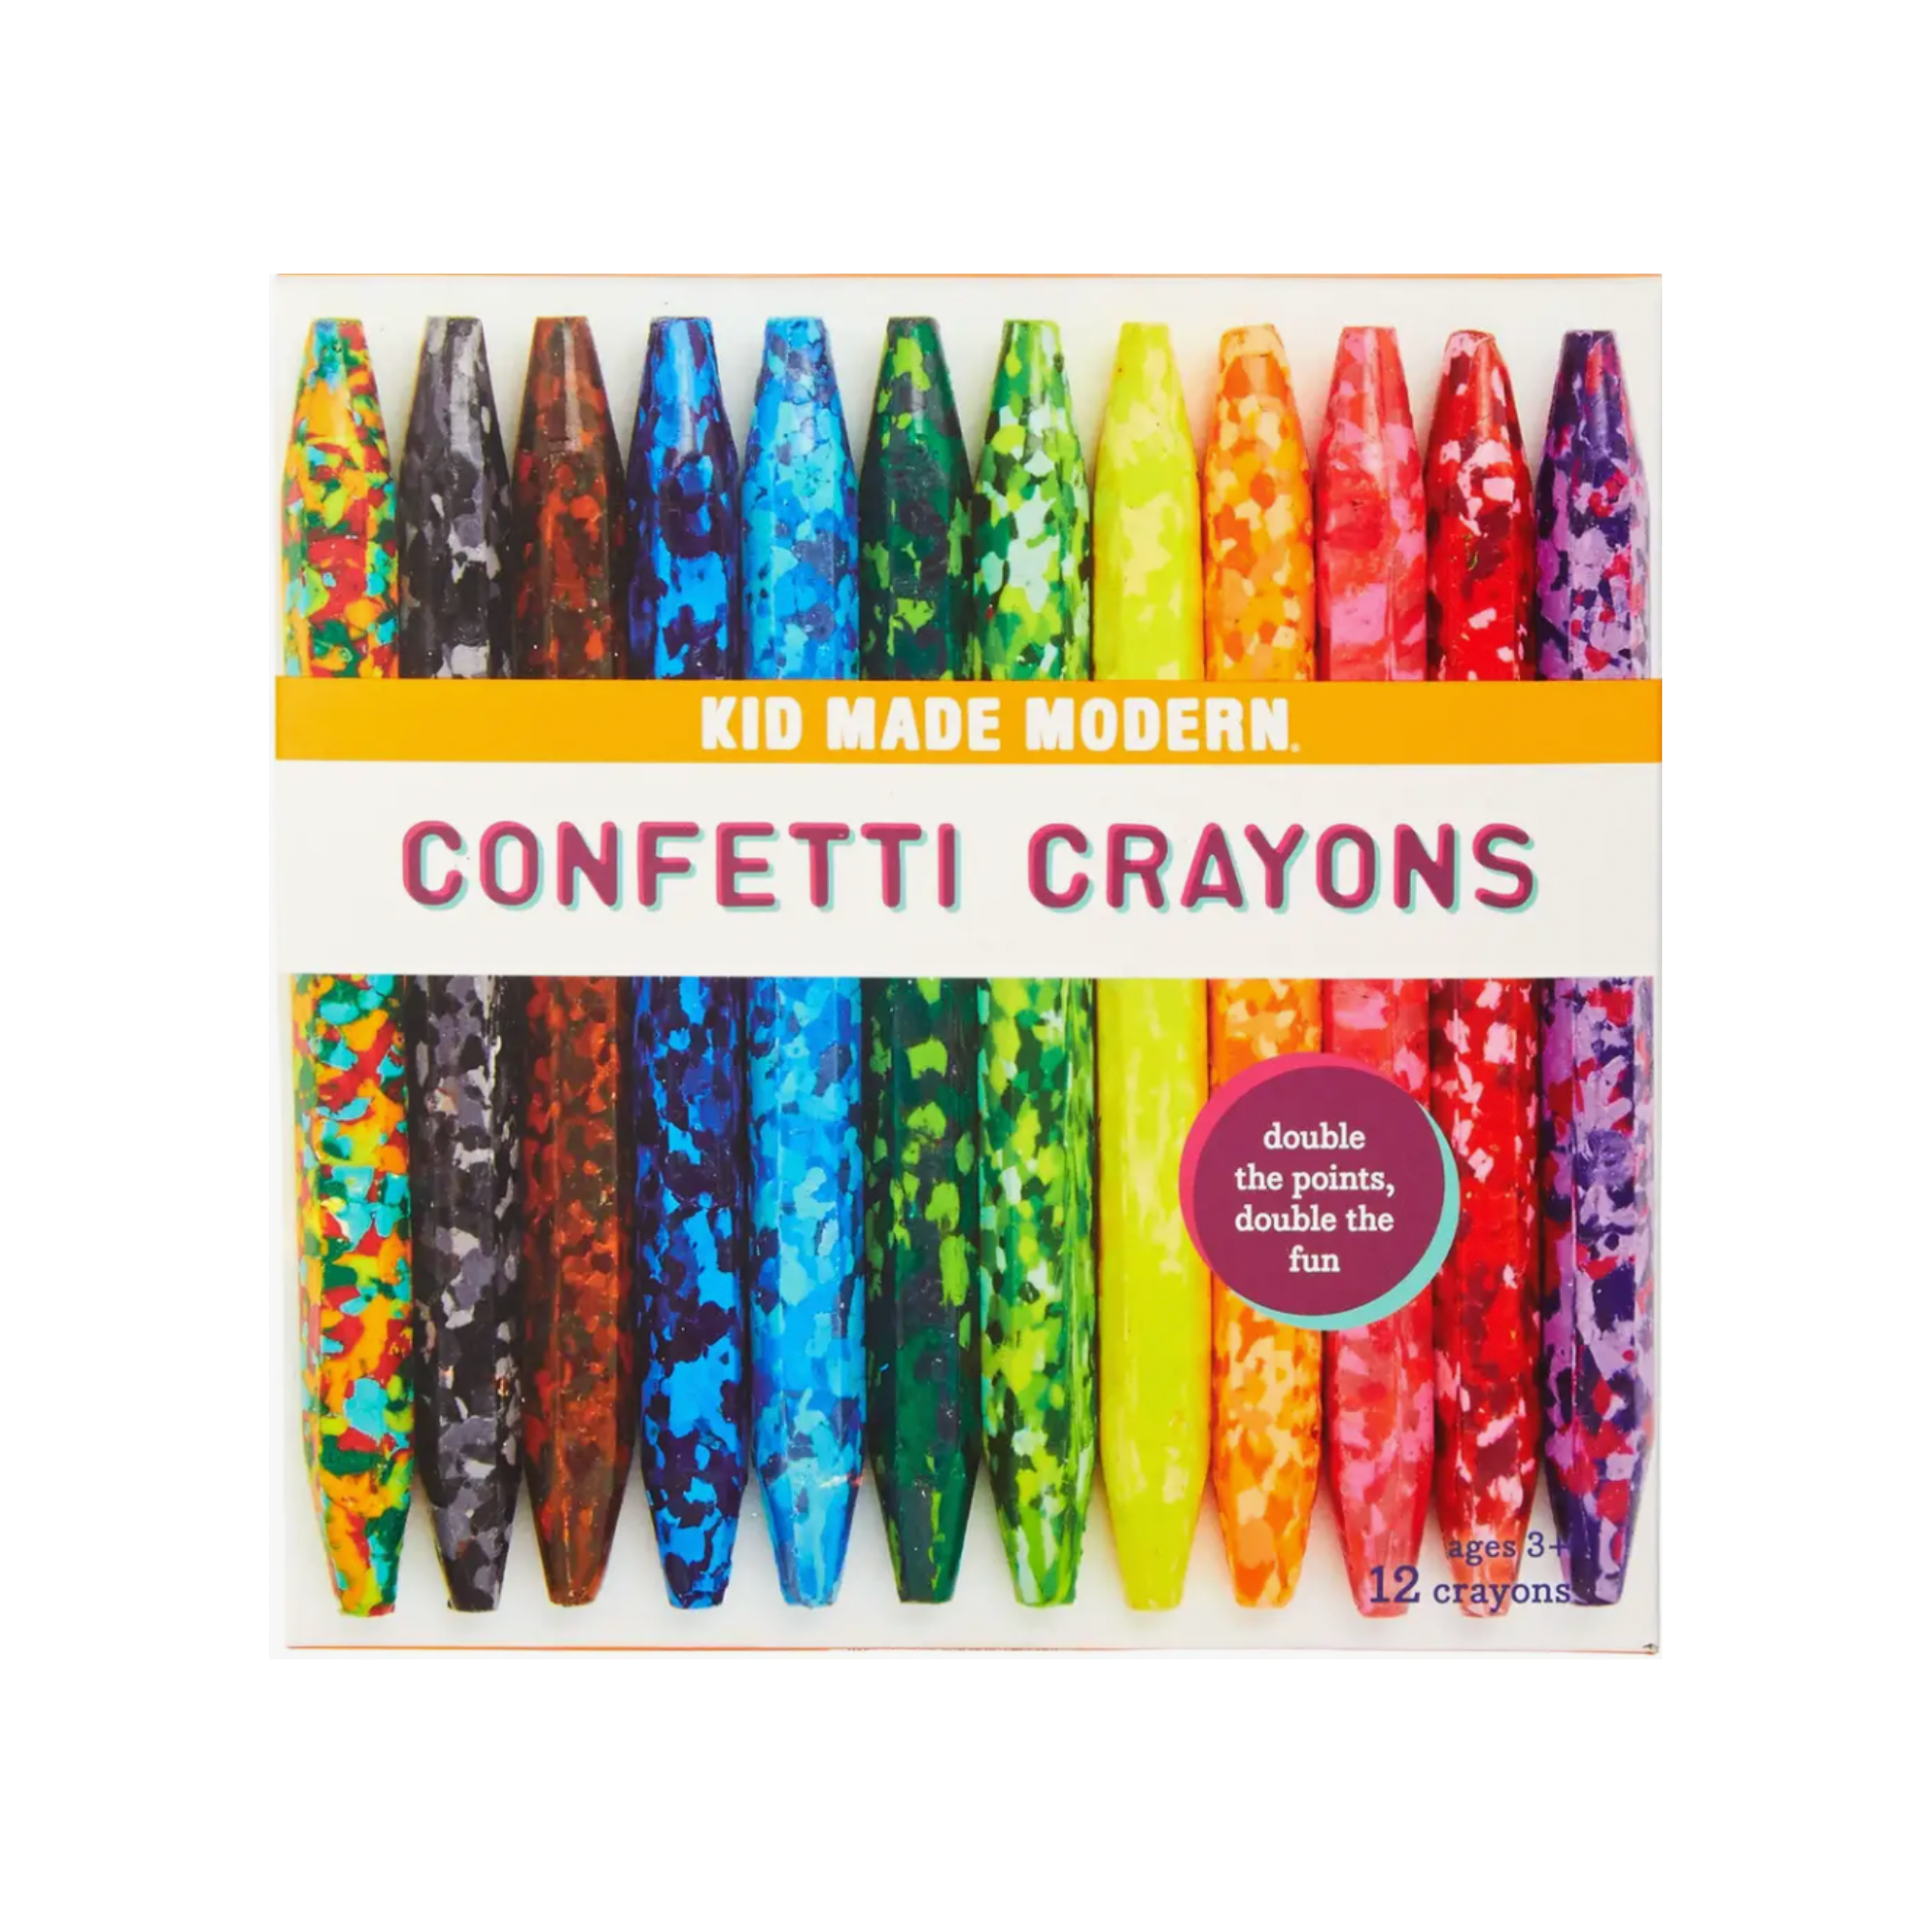 Crayola Confetti Crayons, Multi Color 24 Crayons